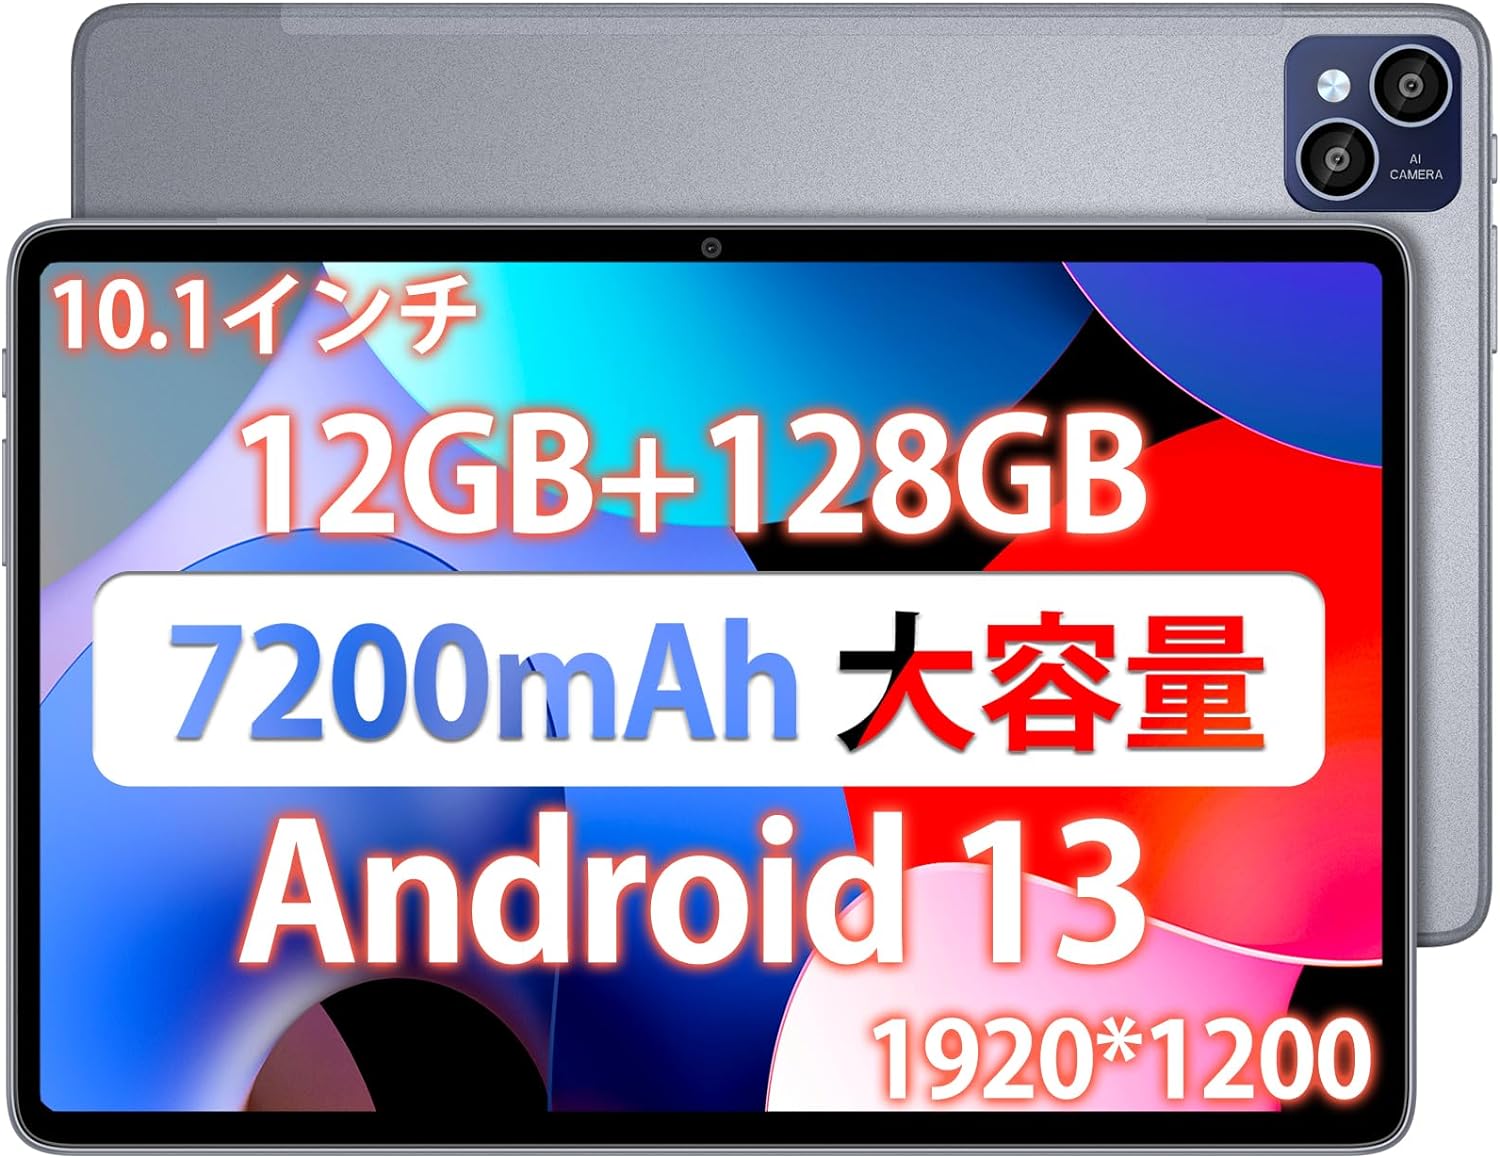 タブレット タブレット Android13 10インチ wi-fiモデル 8コア CPU 2.0Ghz 12GB+128GB+1TB拡張可能 FHD 1920*1200 IPS 2.4G/5G WiFi 7200mAh大容量バッテリー18WPD急速充電対応GPS搭載 日本語取扱説明書 AAUW T50 プレゼント